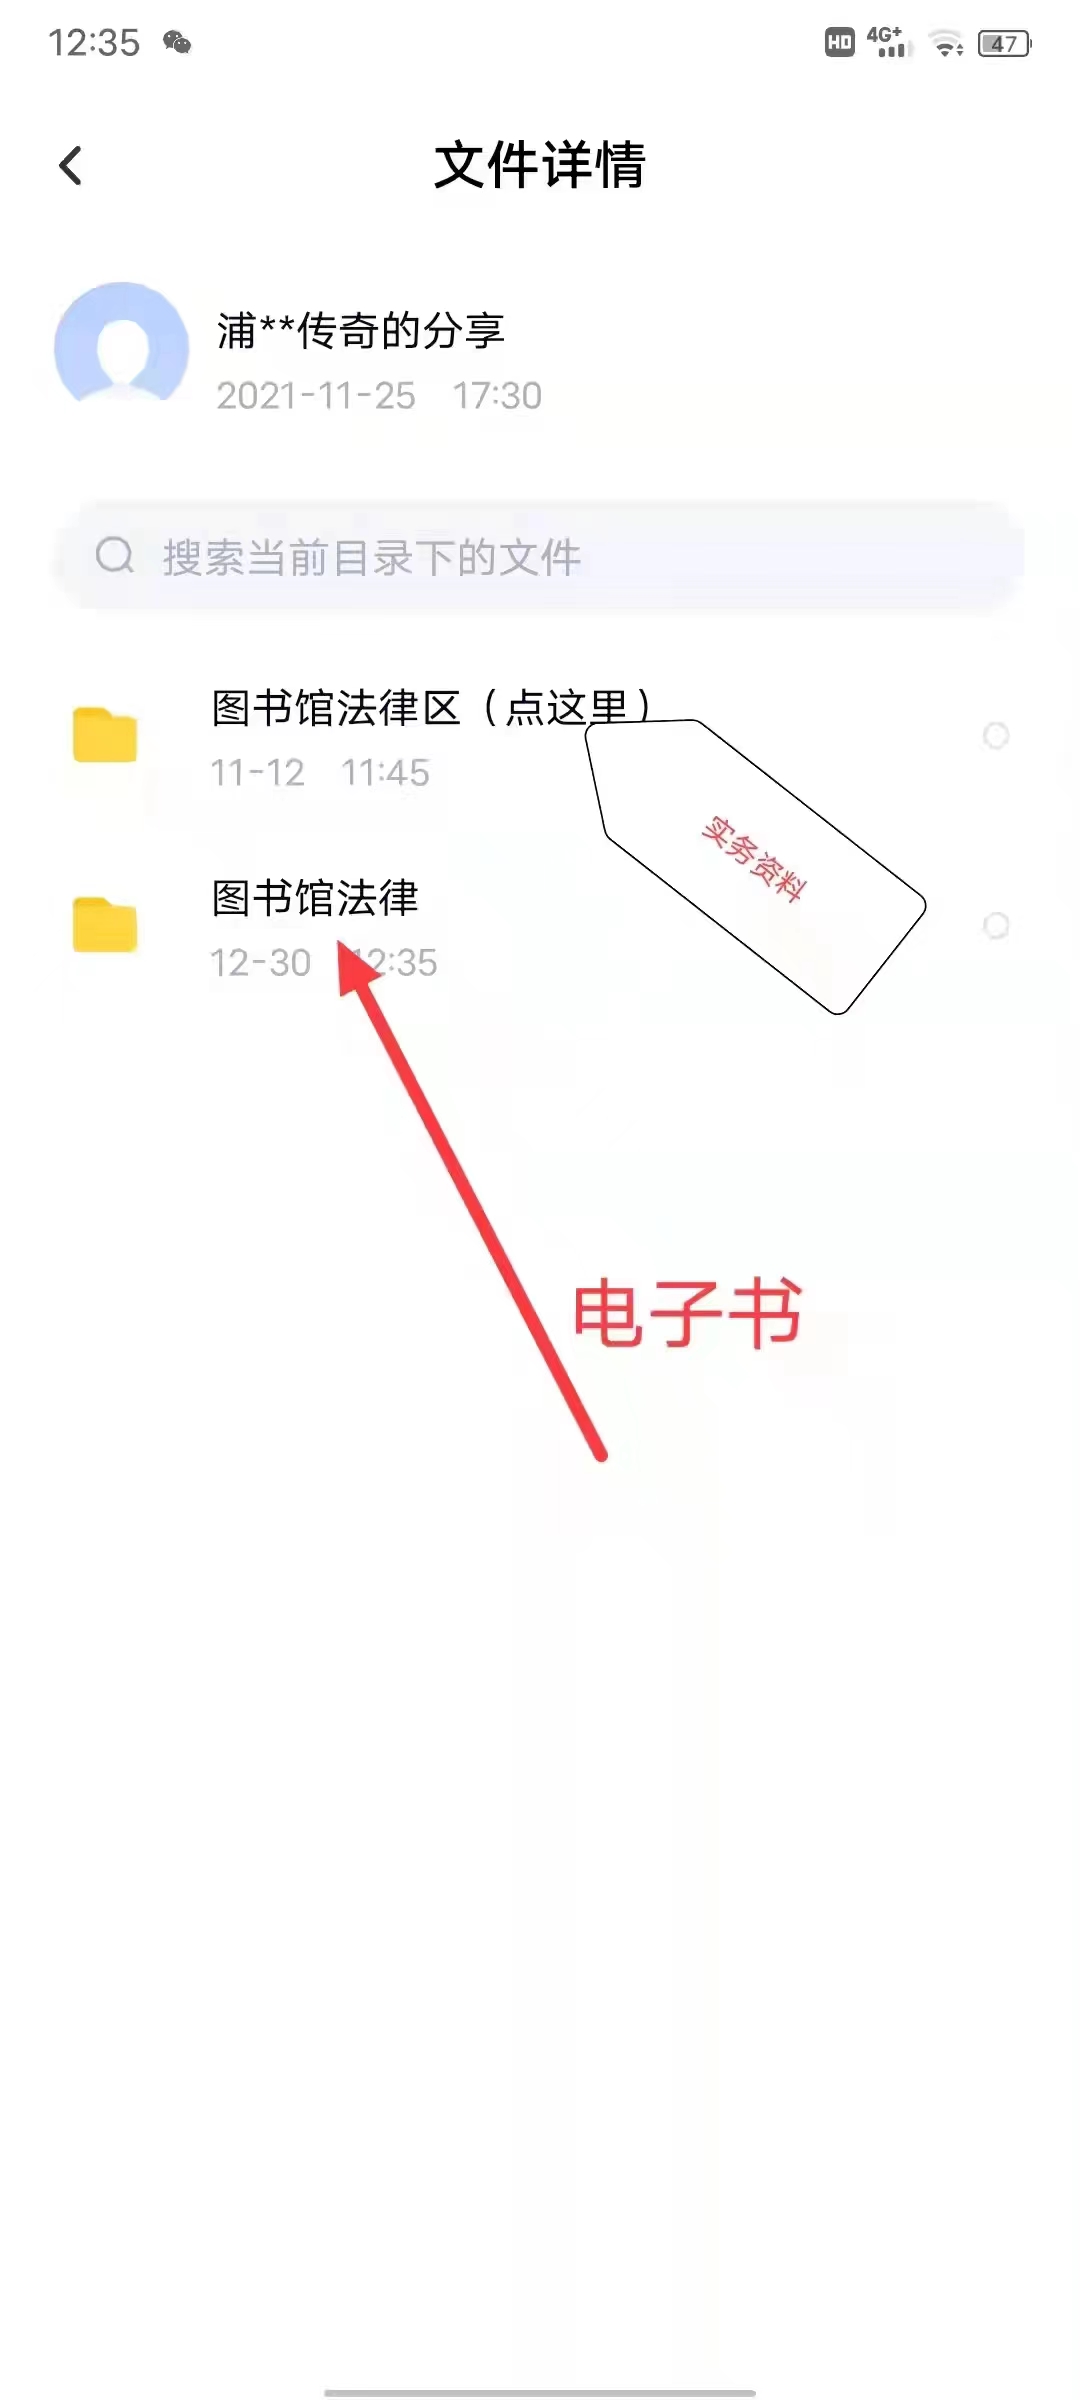 【法律】【PDF】086 商业秘密保护实务及案例精解 202208 王俊林